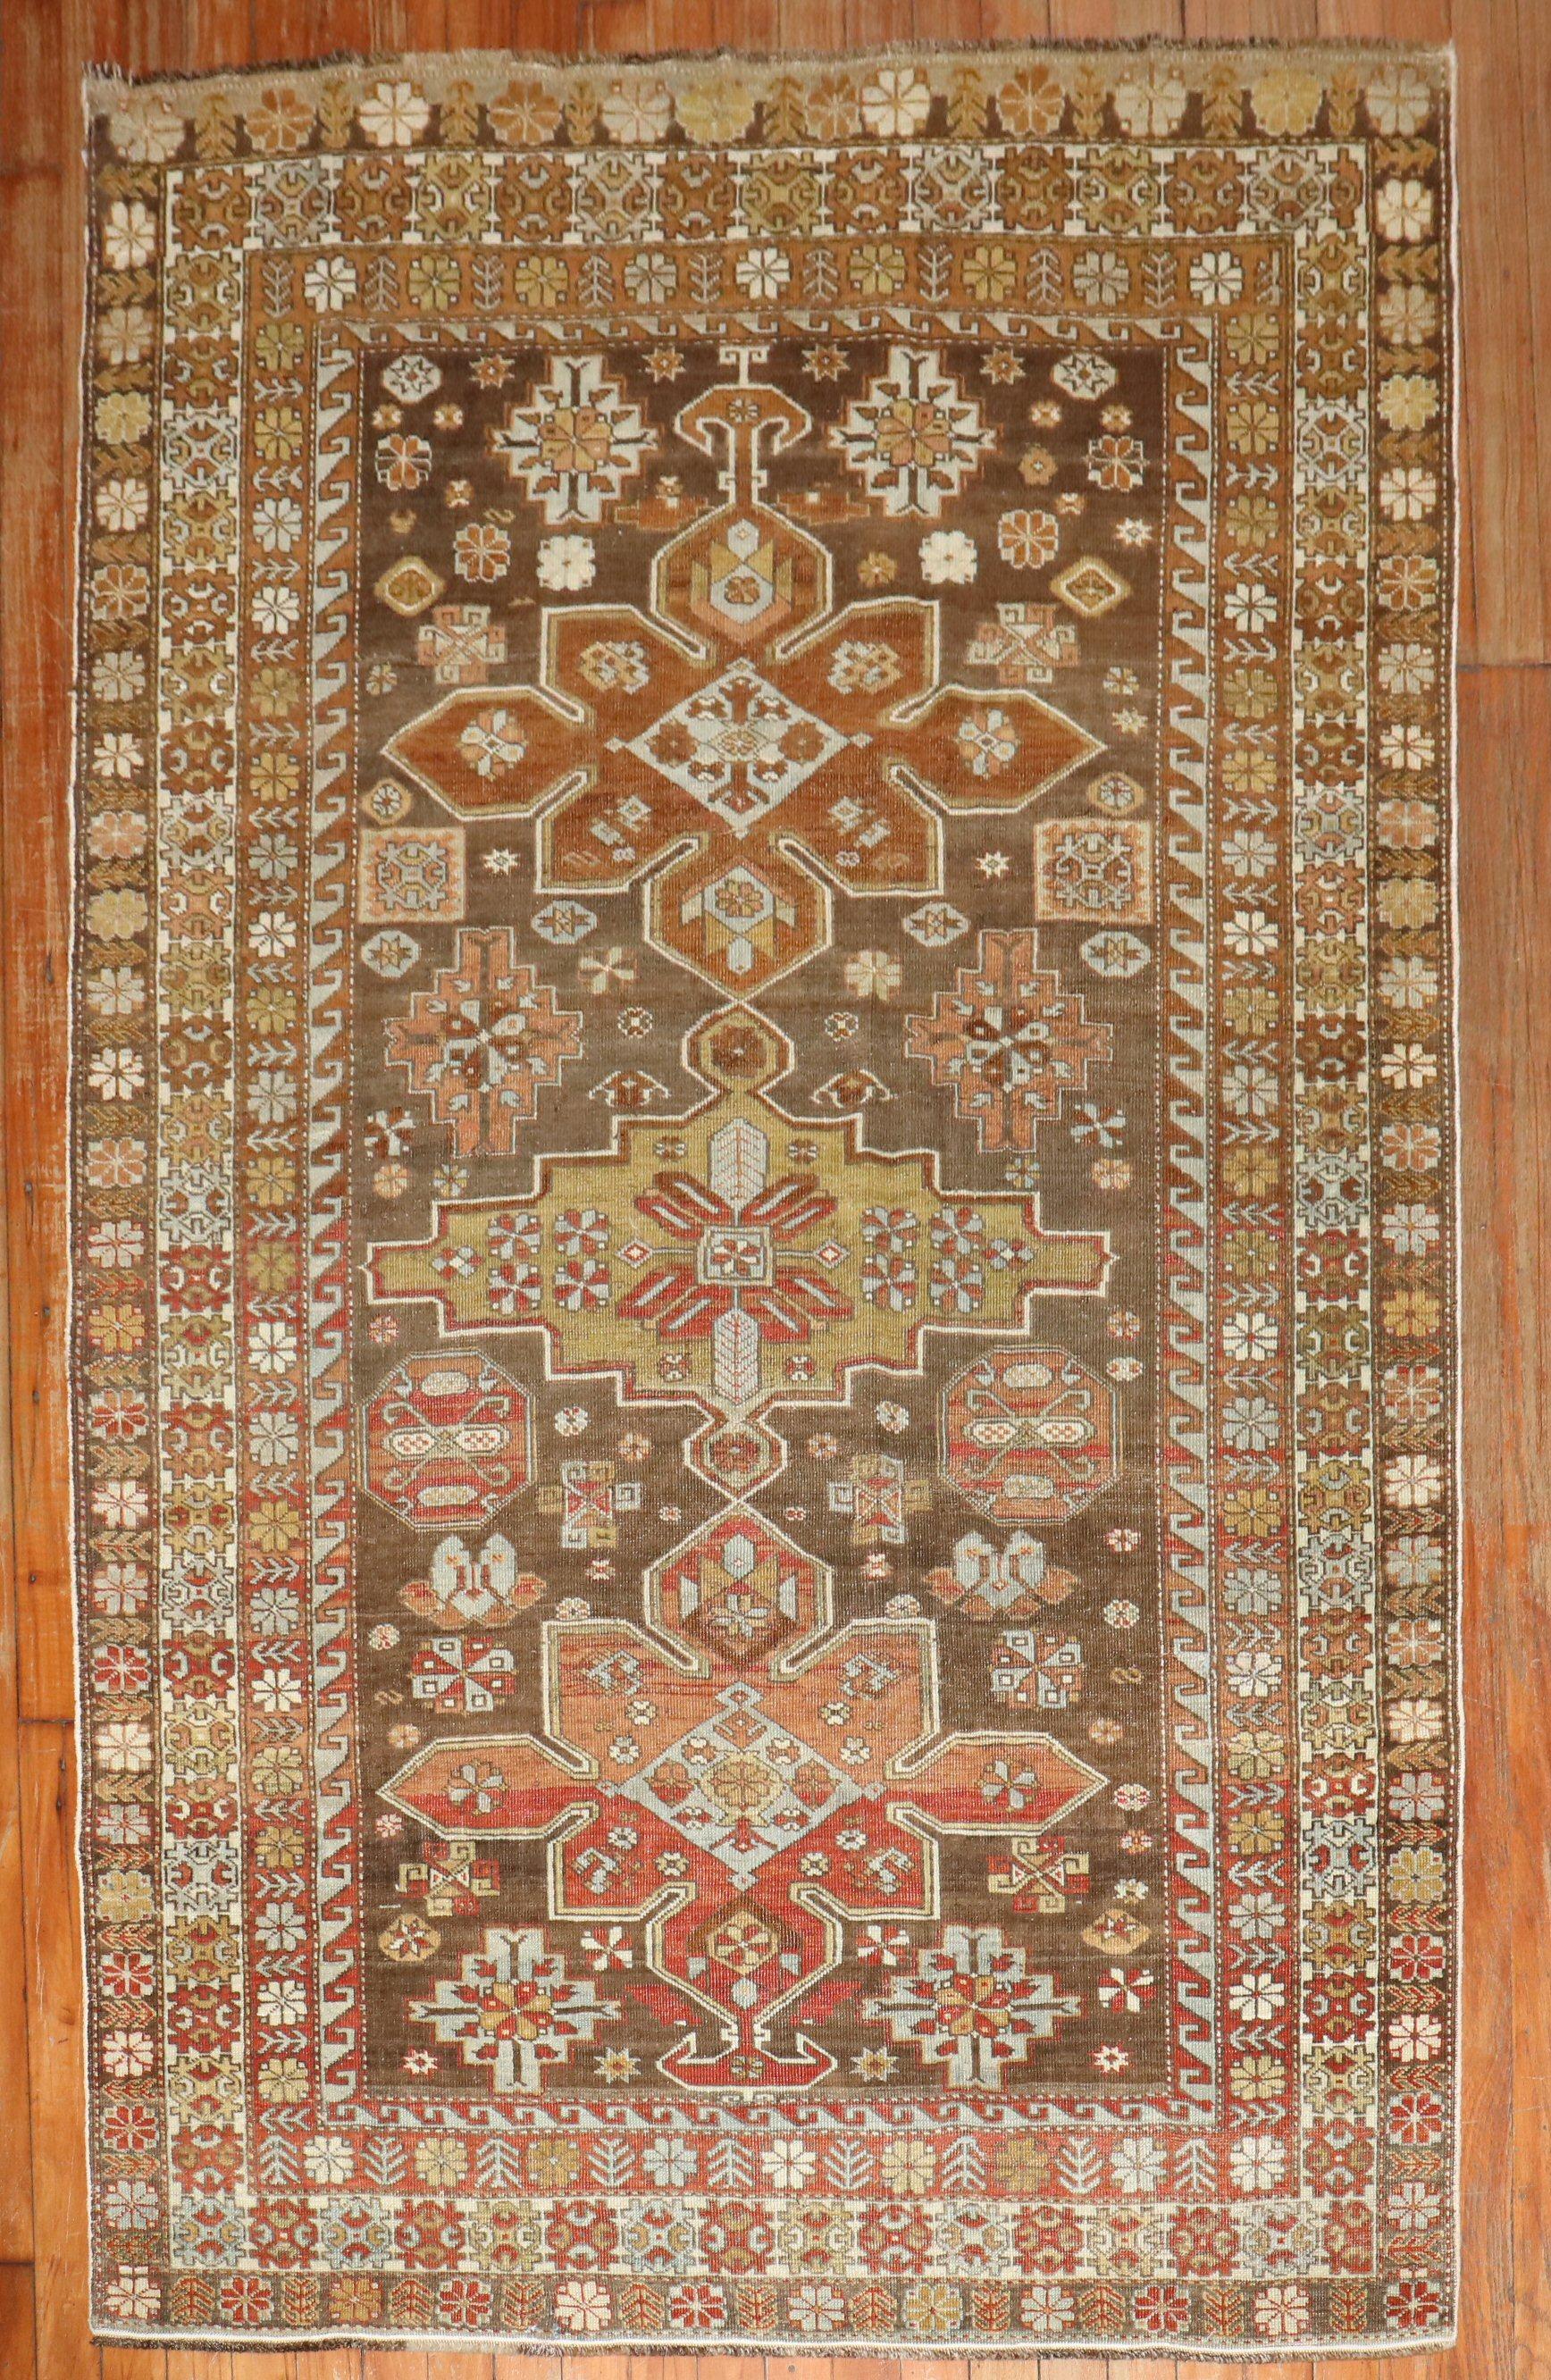 Ein kaukasischer Teppich aus dem 2. Quartal des 20.

Maße: 3'11'' x 6'1''

Antike kaukasische Teppiche aus dem Dorf Schirwan gelten immer noch als eine der besten Dekorations- und Sammlerarten aus den kaukasischen Regionen/Dörfern. Ähnlich wie bei